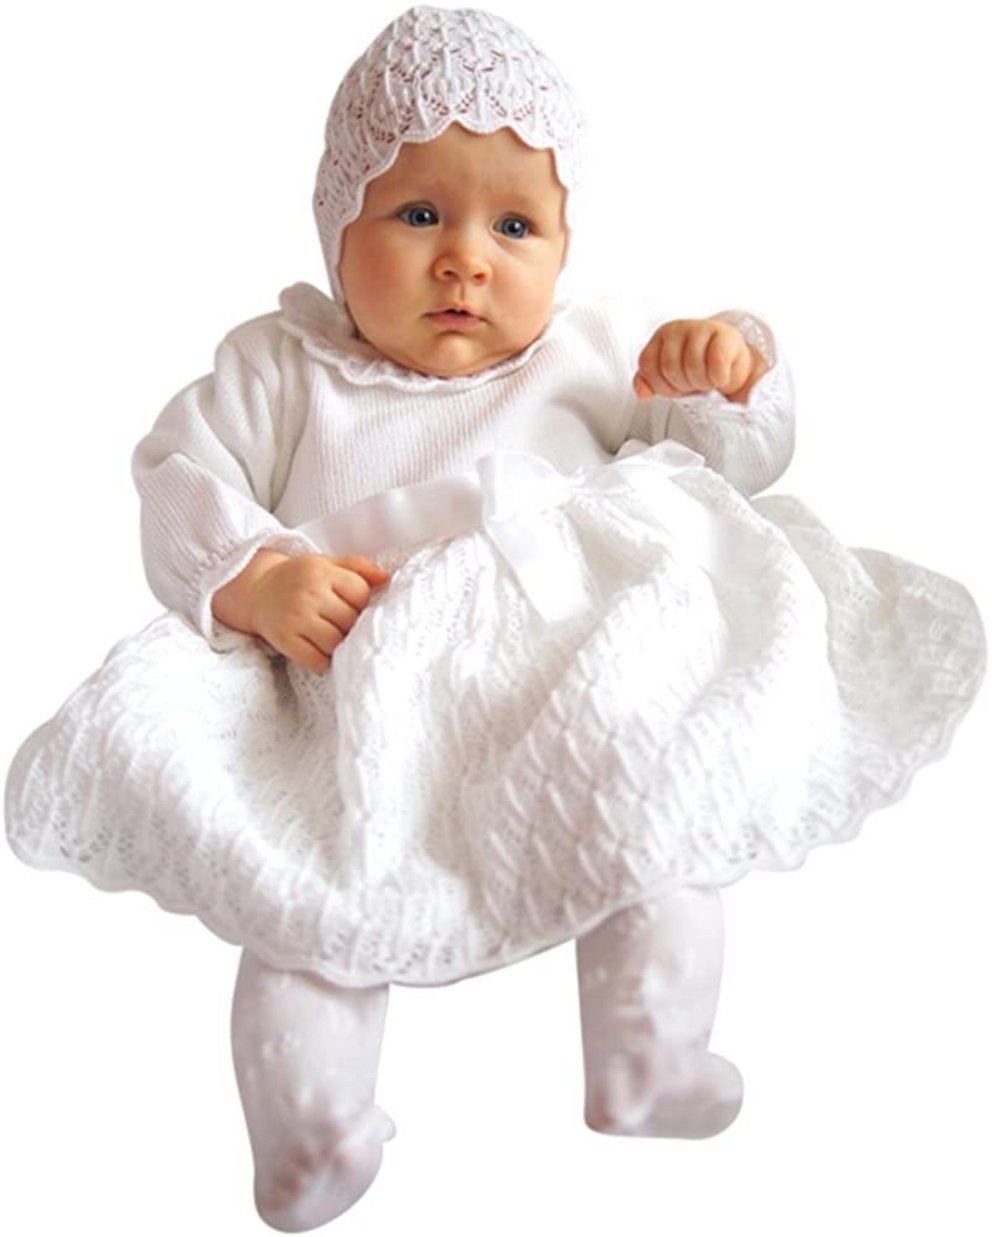 Taufkleider Mädchen: Weißes Taufkleid mit Mütze und Schlaufe